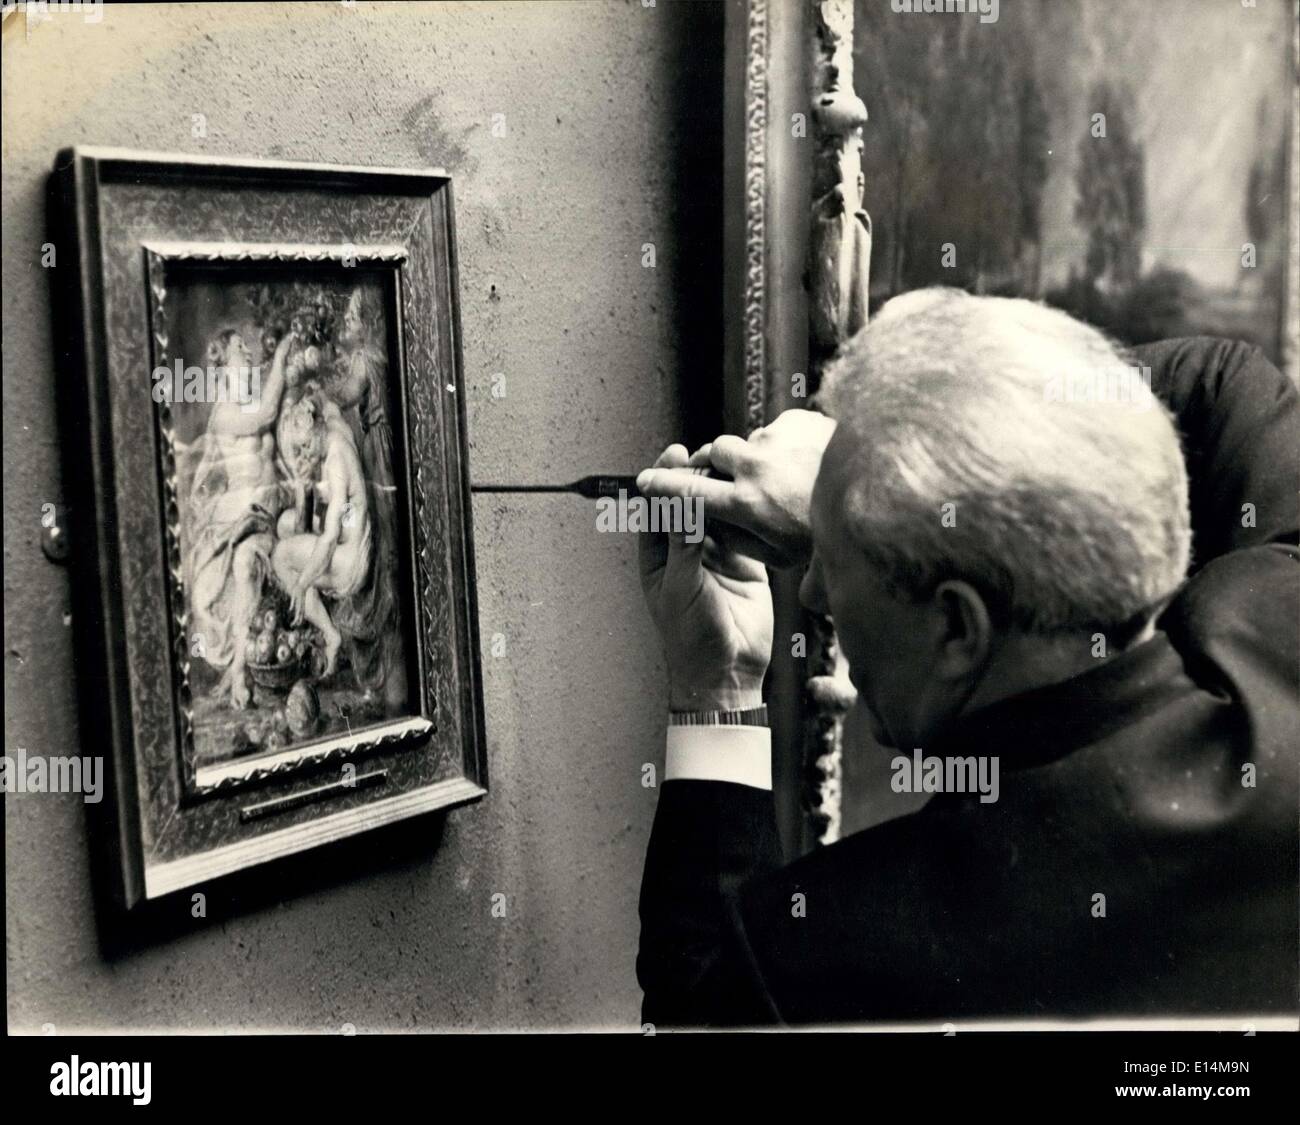 5. April 2012 - 'gestohlen' Gemälde zu sehen. Vernissage am Dulwich College Bildergalerie. In der Dulwich College Bildergalerie heute, Sir Gerald Kelly, K.C.V.O., P.P.R.A., Vorsitz bei privaten Presse Blick auf die acht Gemälde, die am Ende des vergangenen Jahres aus der Galerie gestohlen wurden (30./31. Dezember 1966). Die Gemälde im Wert von £1½ und 2 Millionen 3 £ Rembrandts, 3 Rubens, 1 Elsheimer, 1 Dou - waren ein paar Tage nach dem Überfall erholt. Sie keine schweren Schäden nicht leiden. Stockfoto